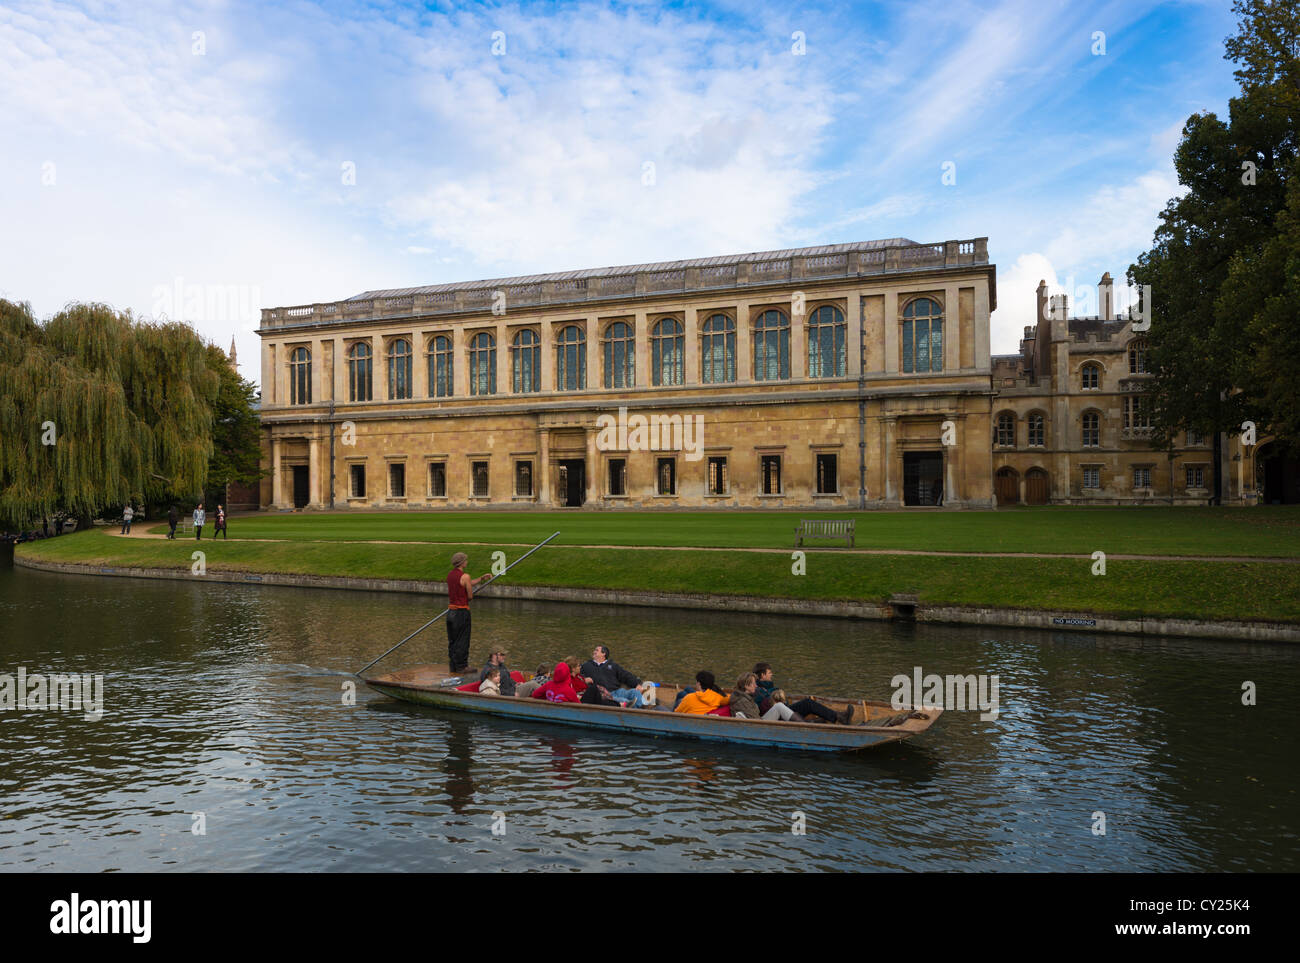 La Bibliothèque Wren, Trinity College Cambridge, avec à l'avant en barque sur la rivière Cam, au Royaume-Uni. Banque D'Images